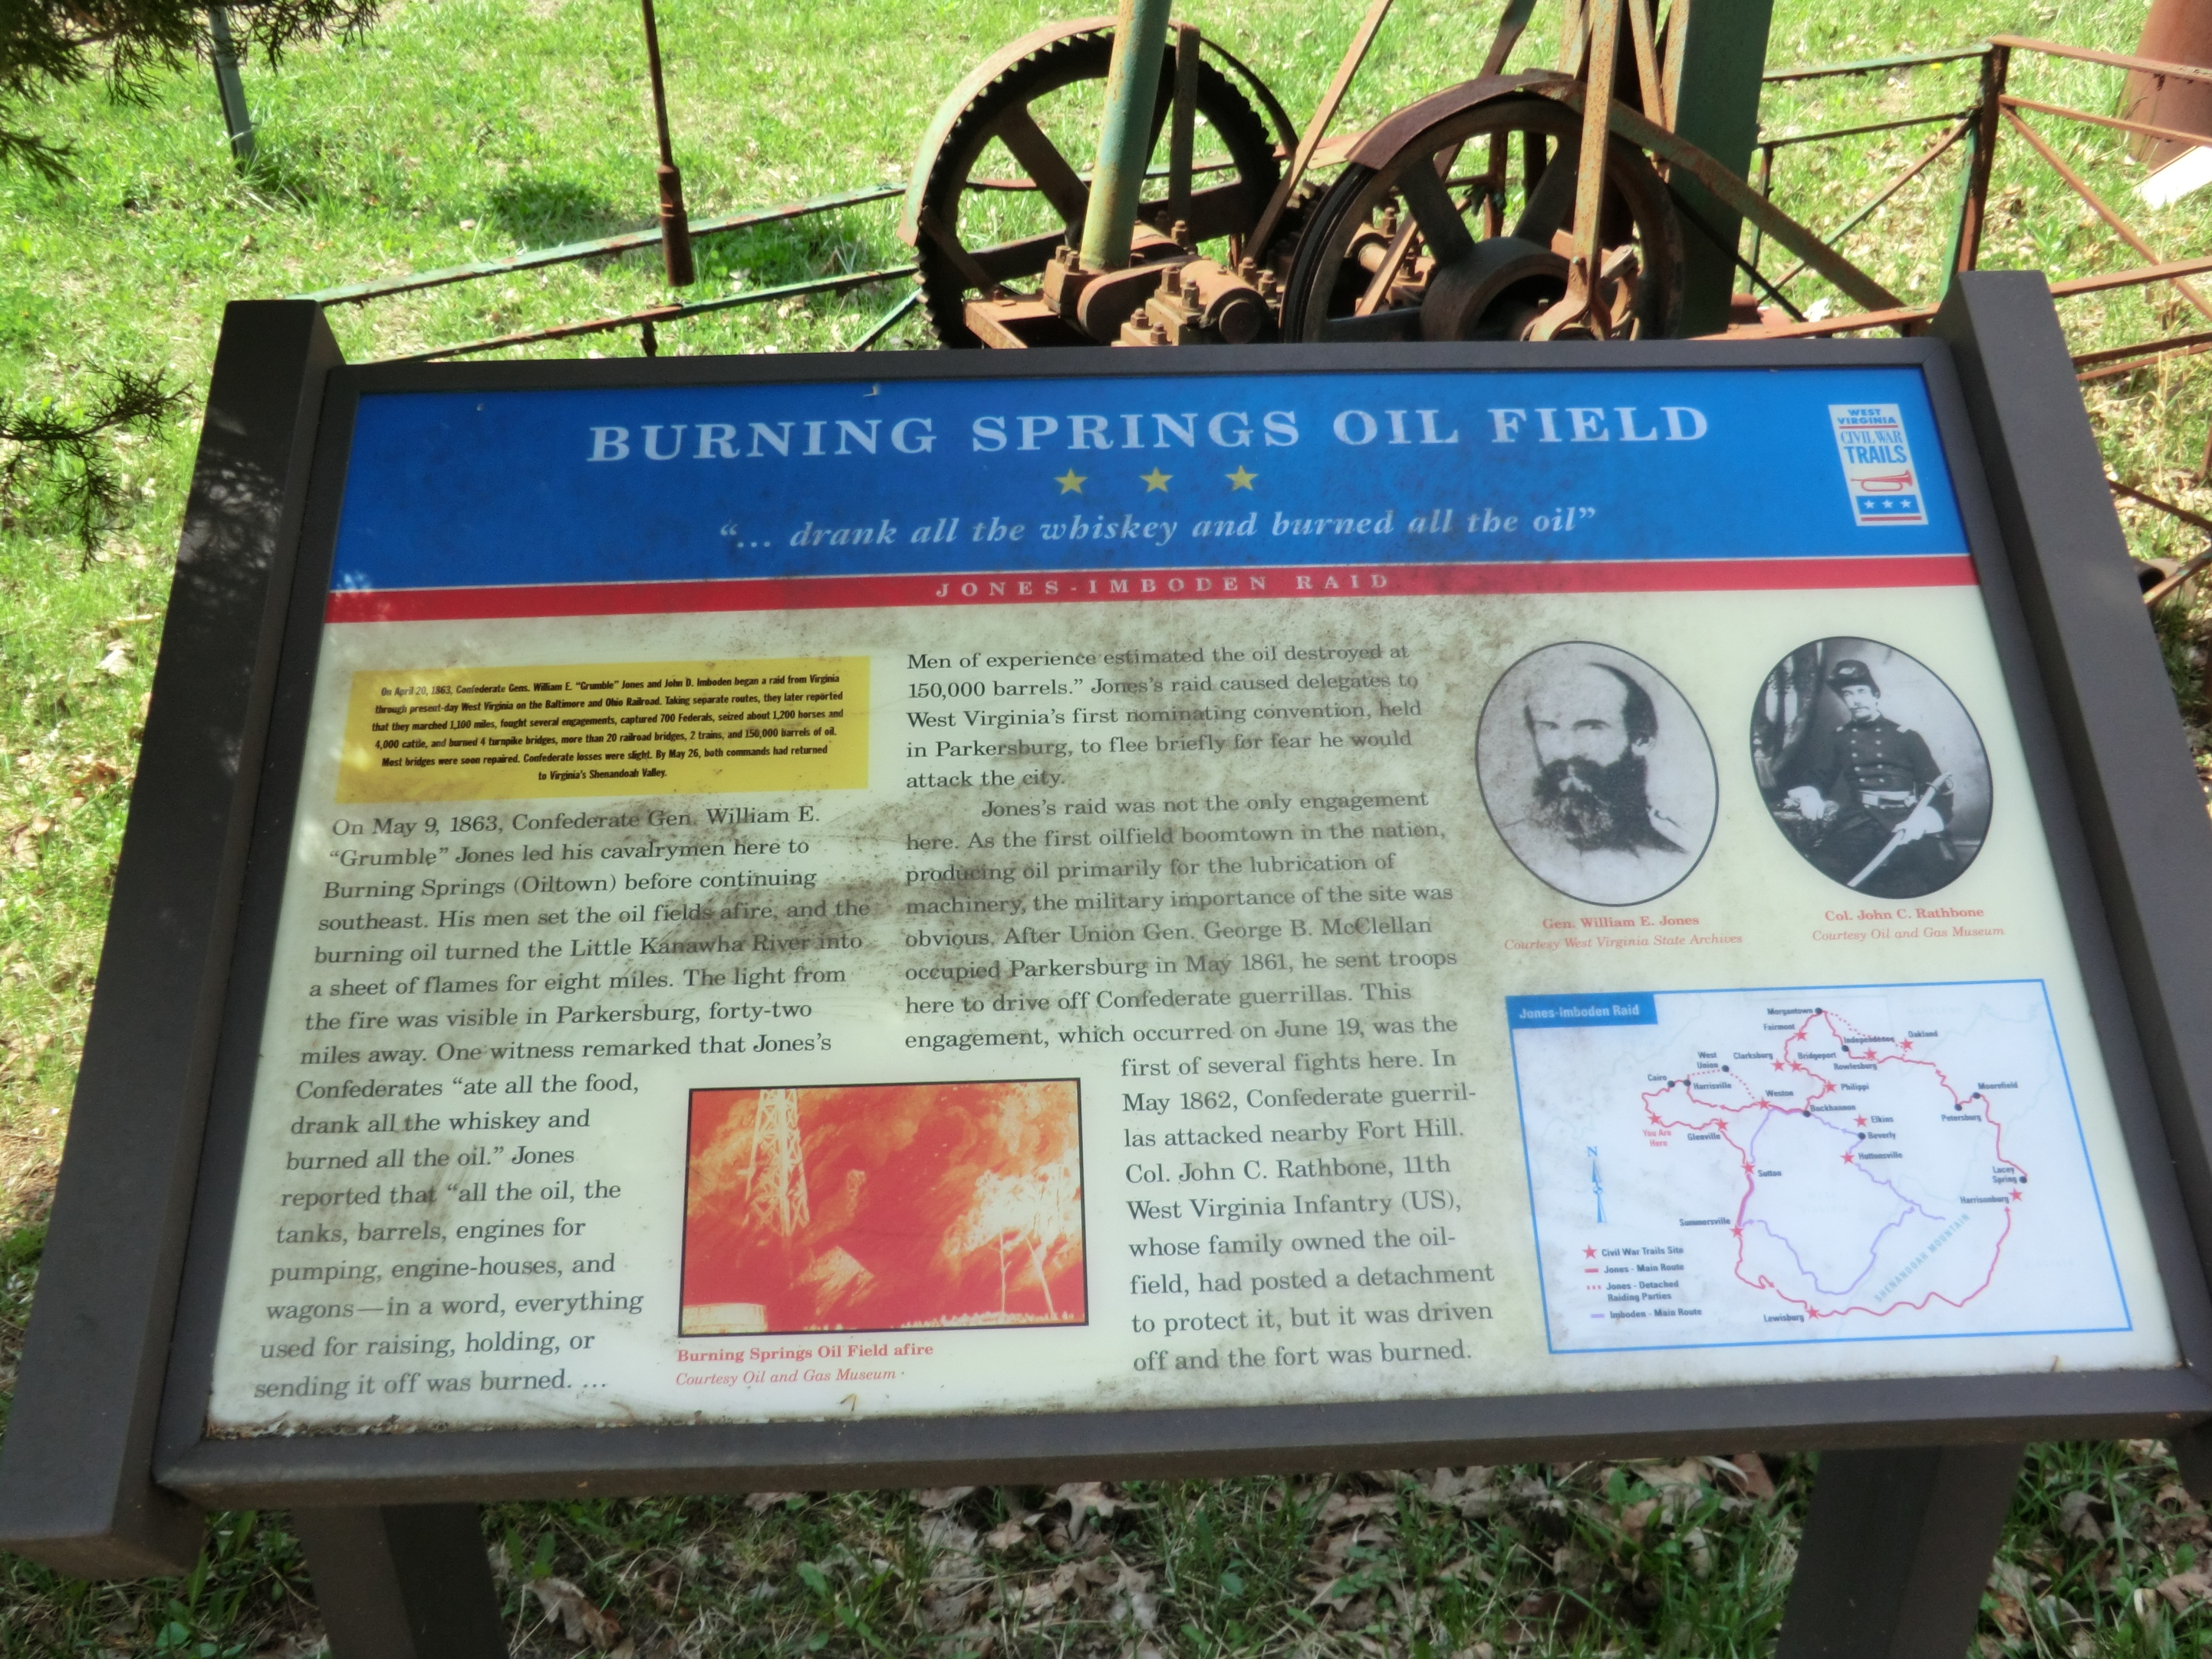 Historical marker regarding the destruction of the Burning Springs oilfields.